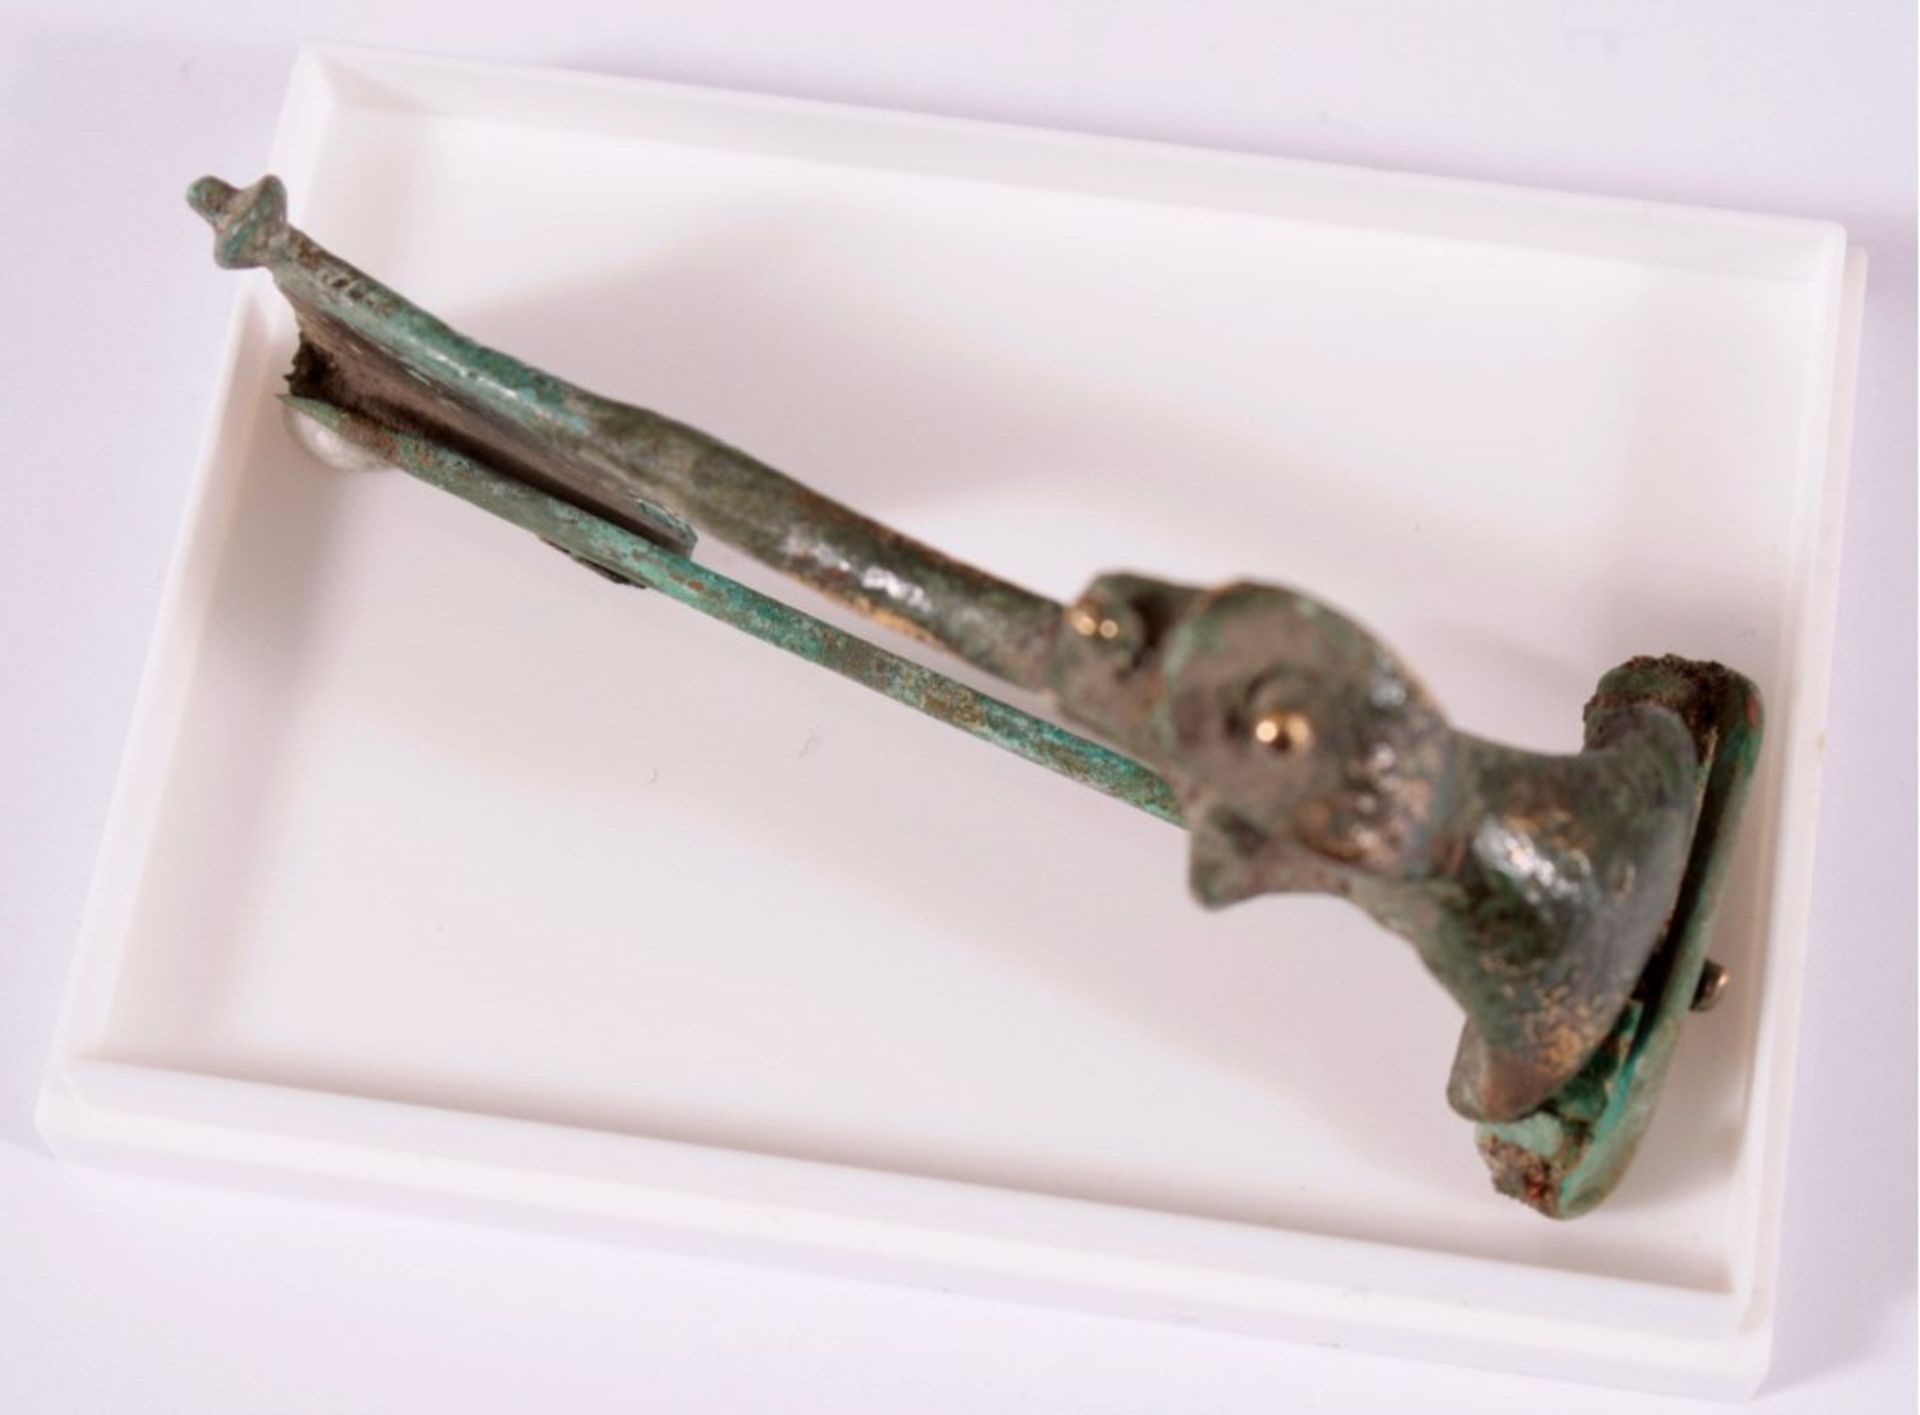 Römische Pannonia Kronenfibel aus Bronzeca. L-7,5 cm

Dieses Los wird in einer online-Auktion ohne